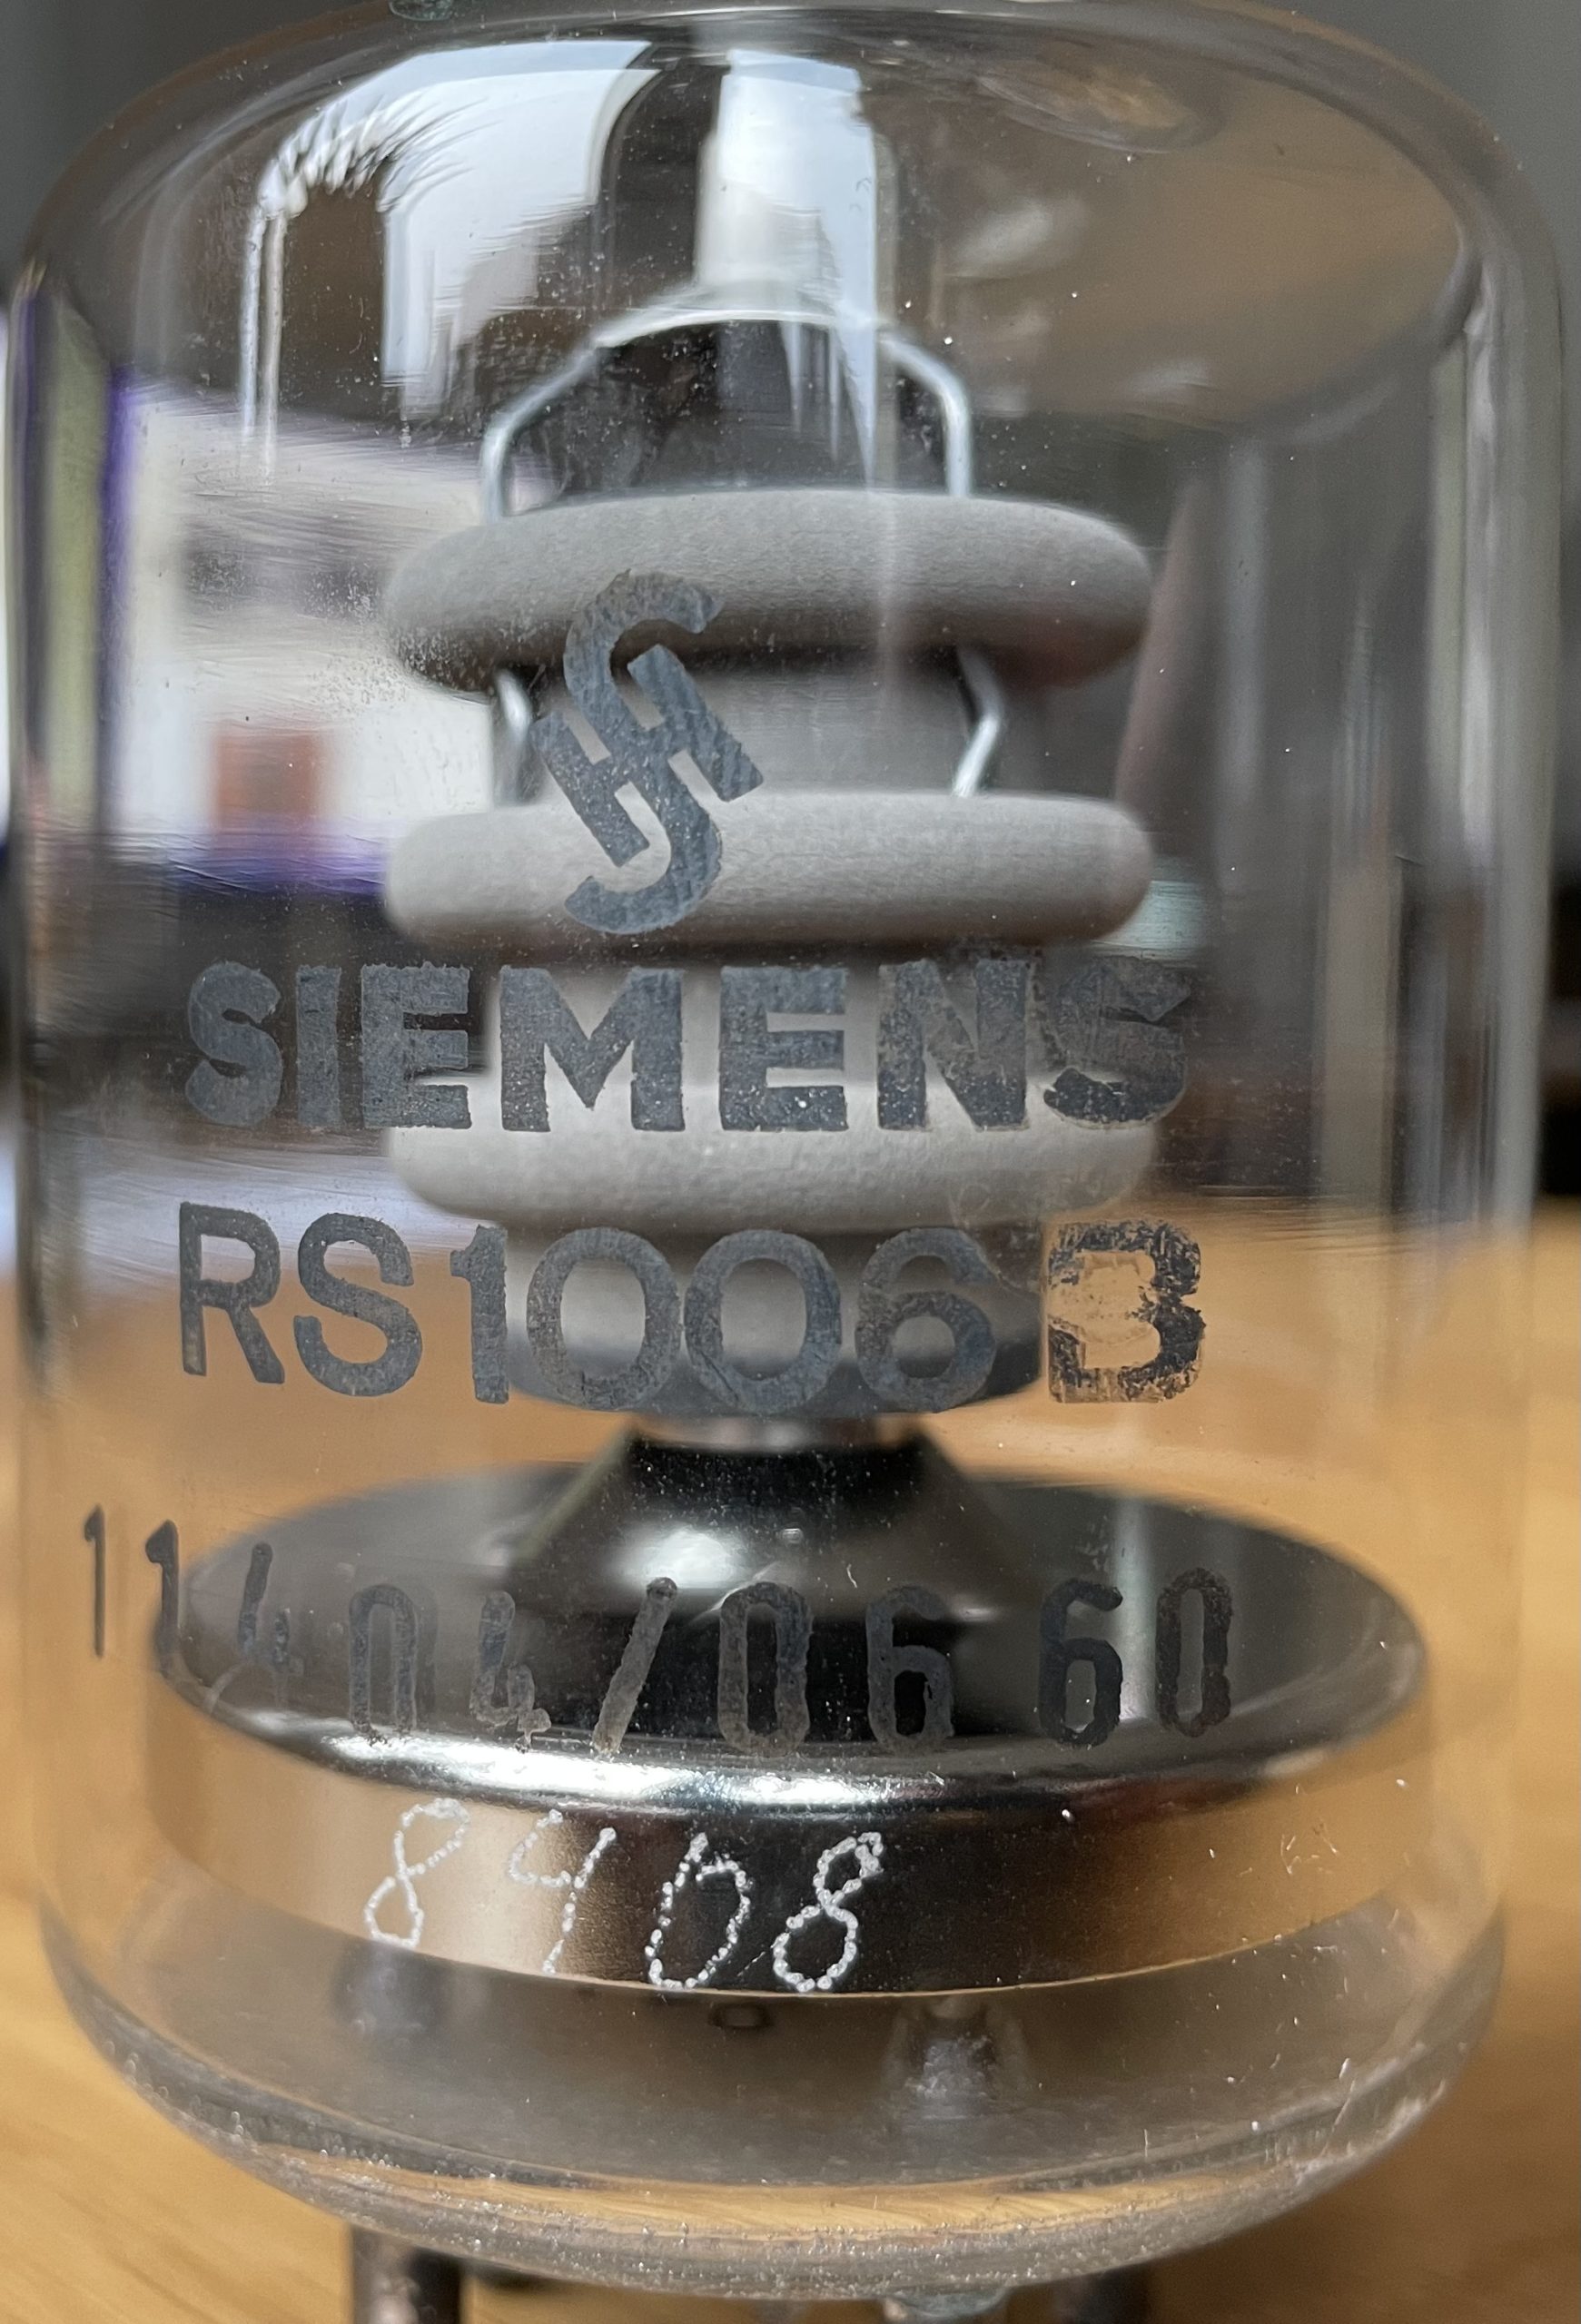 Siemens RS 1006 B